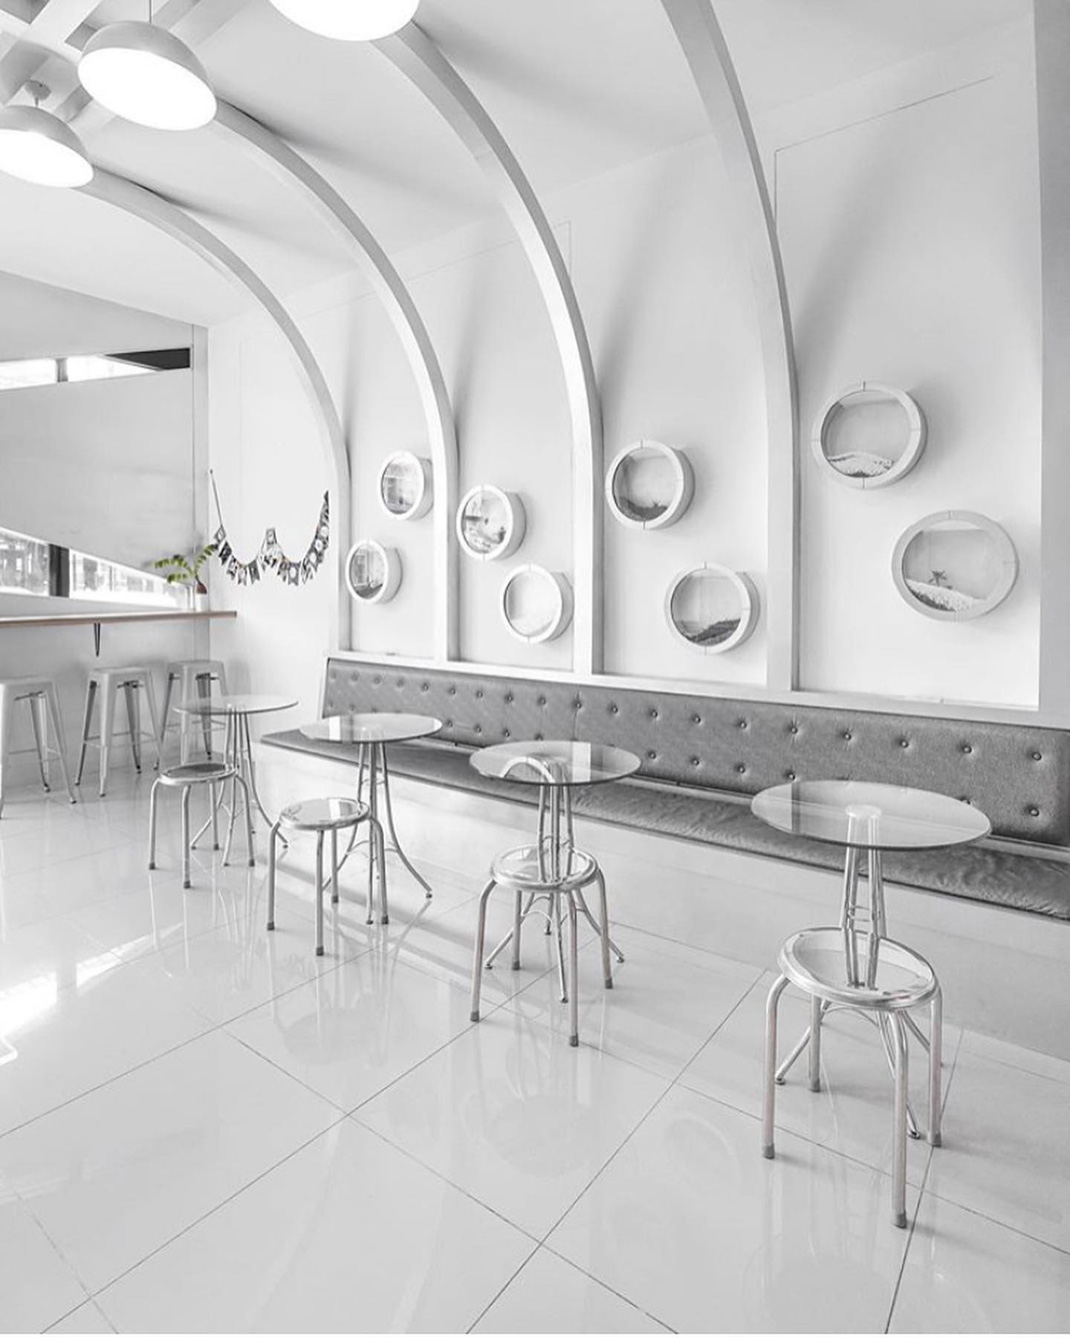 咖啡馆Puffy Cafe’ 泰国 清迈 咖啡馆 工业风 logo设计 vi设计 空间设计